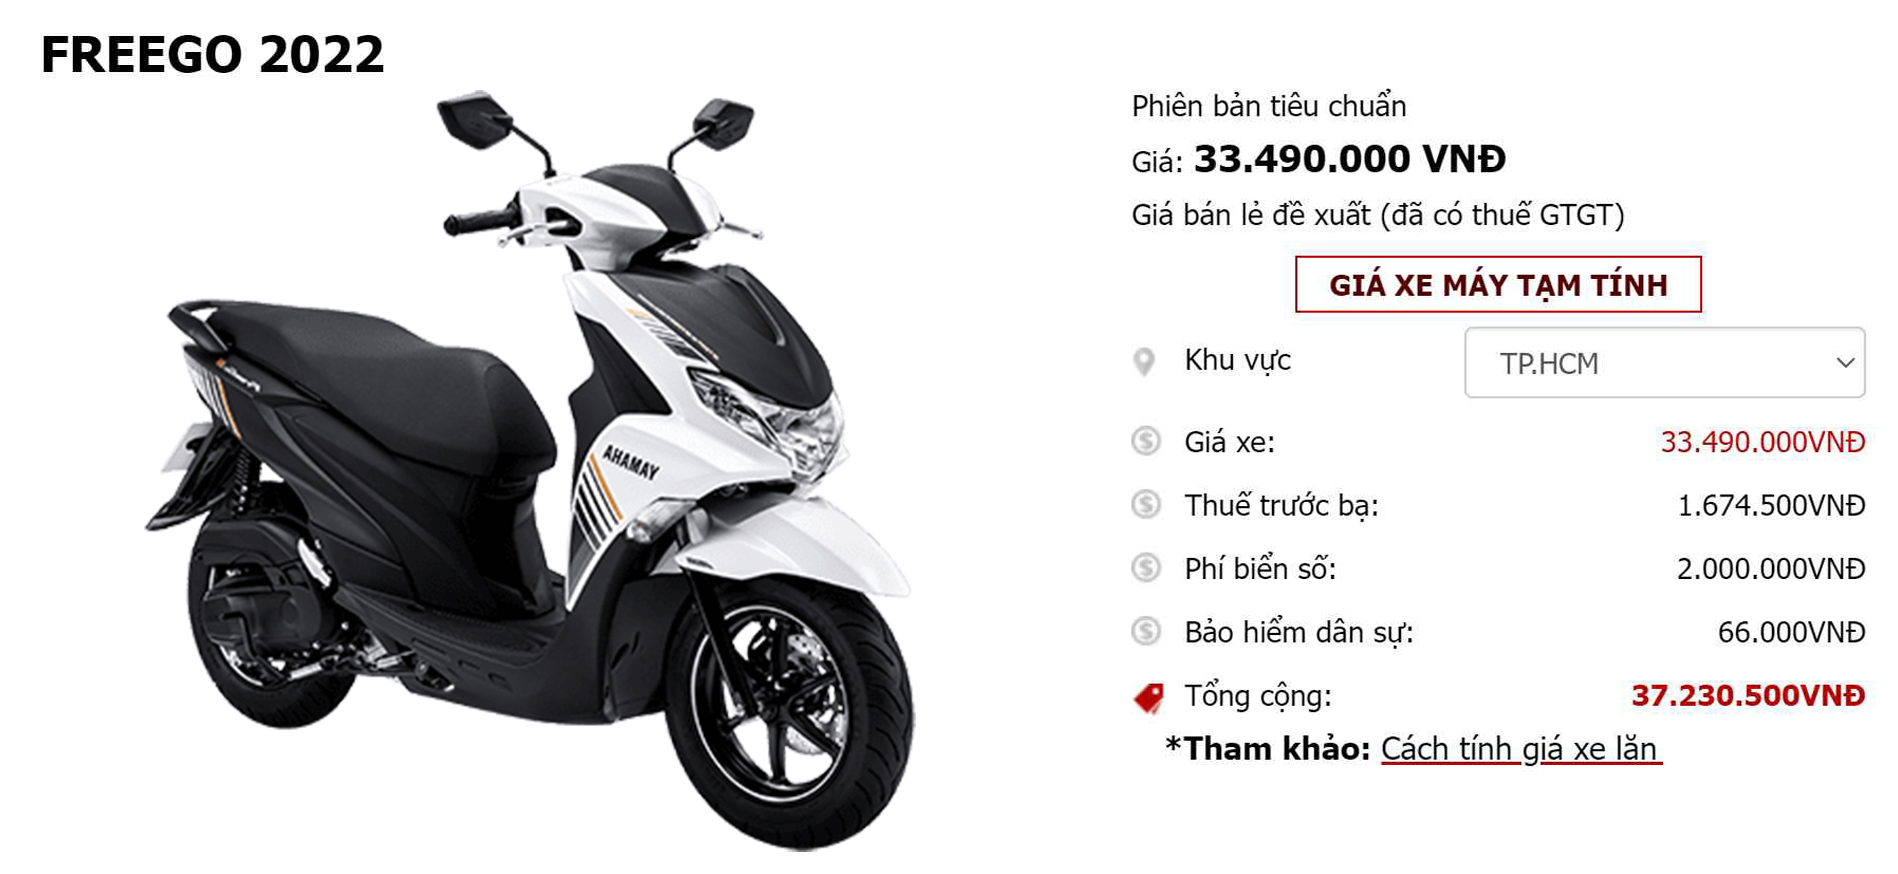 Giá Xe Máy Yamaha Freego S 2022 Mới Nhất Hôm Nay Tháng 1/2022